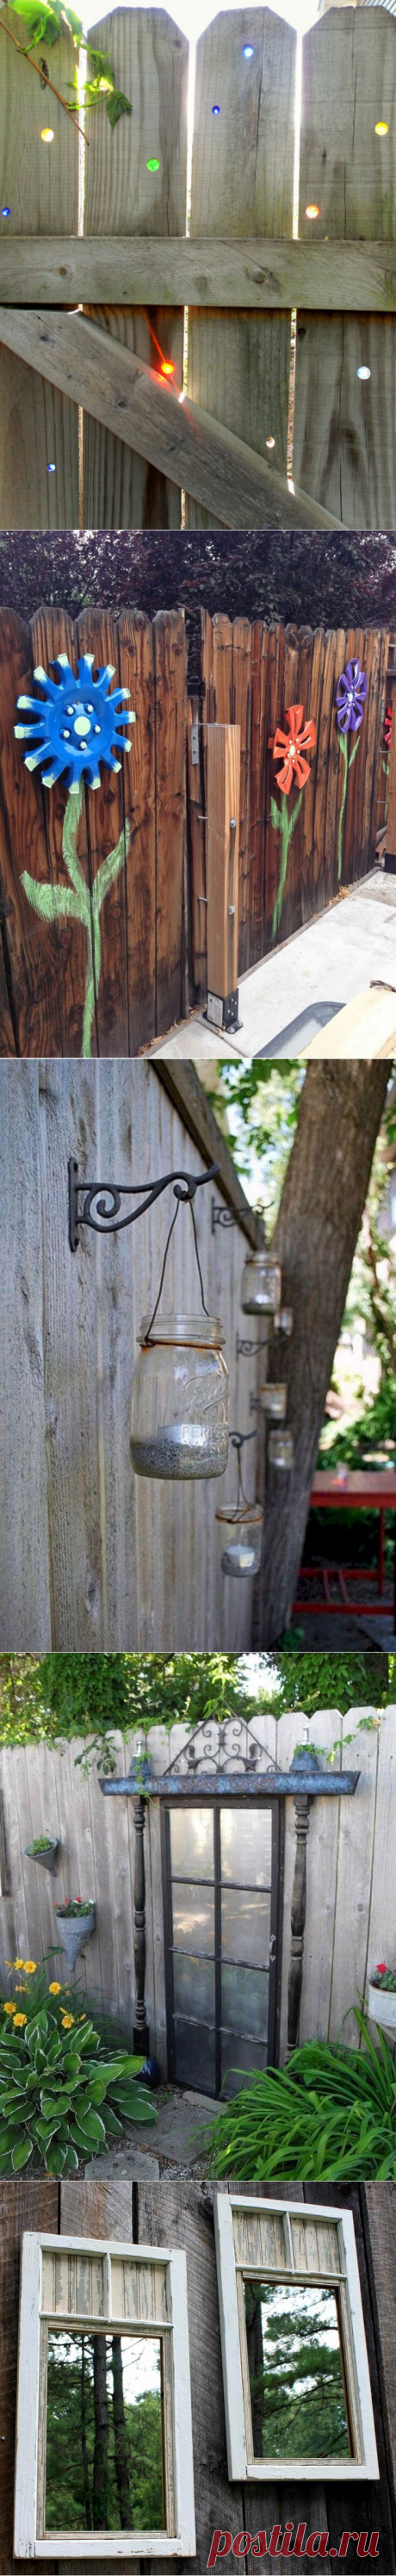 31 Unique Garden Fence Decoration Ideas to Brighten Your Yard - Garden ideas